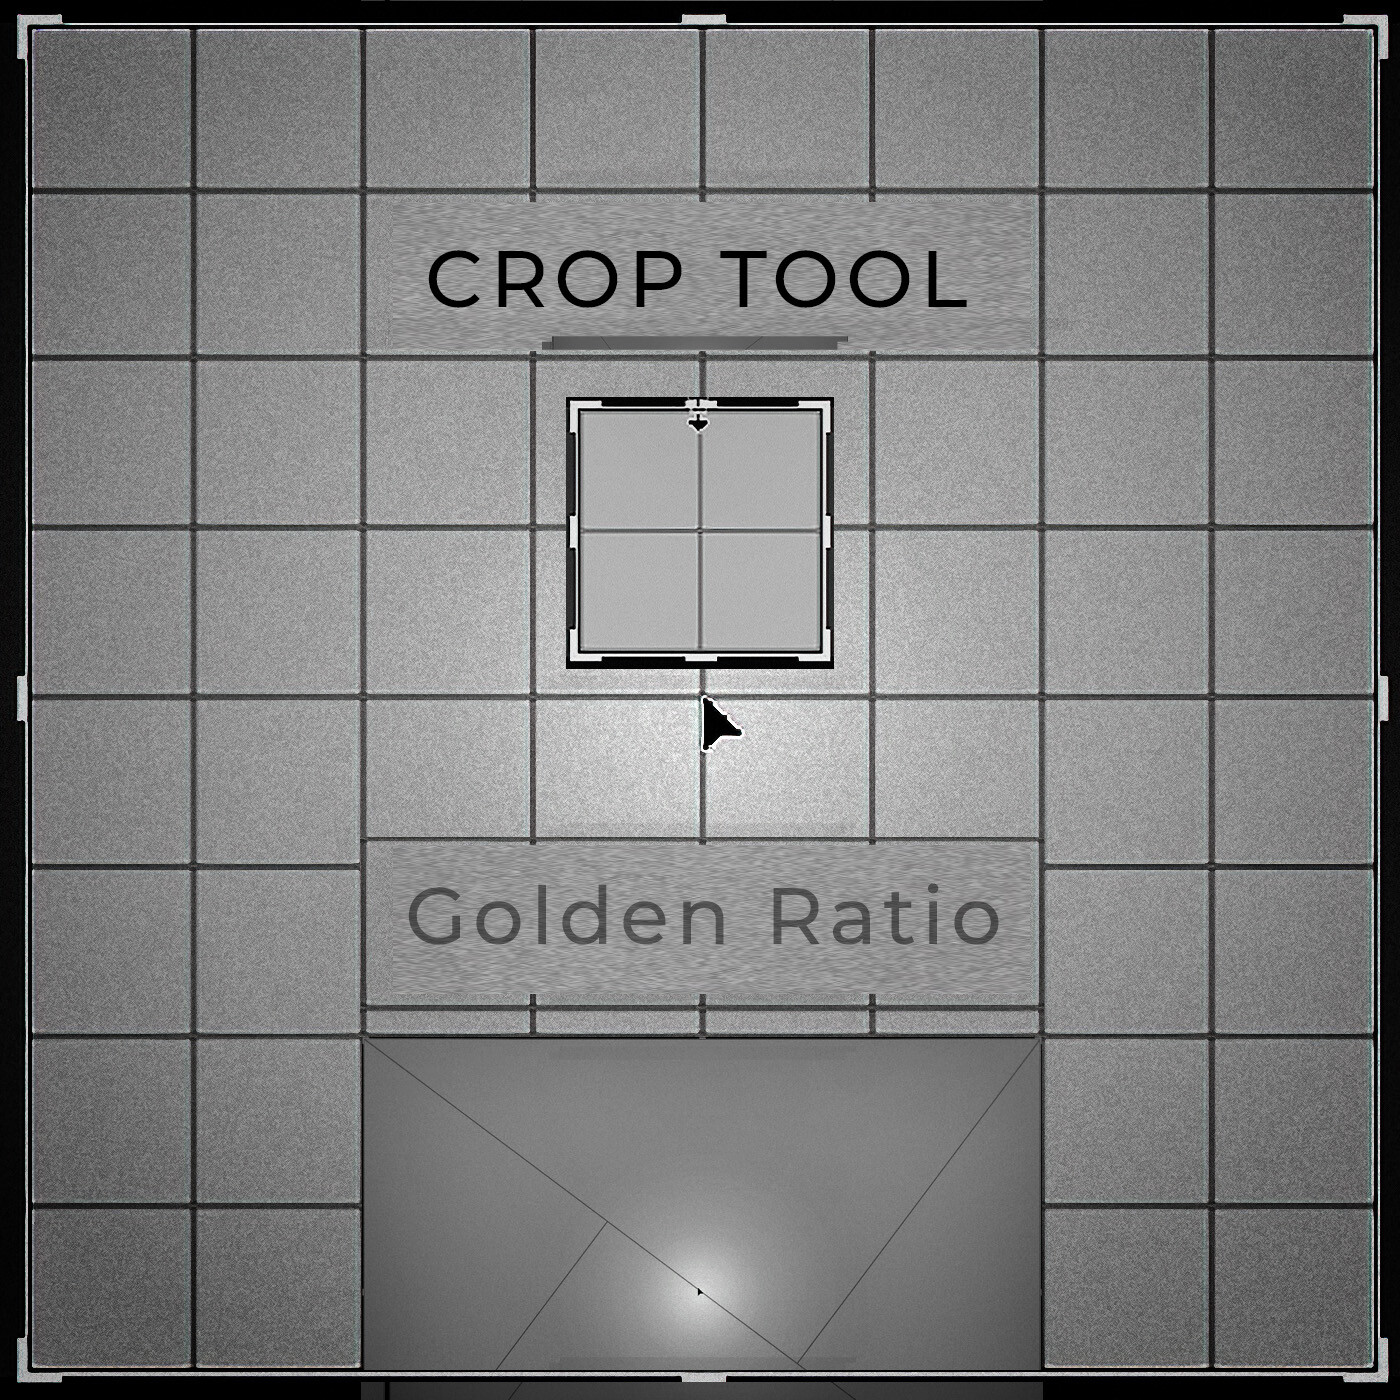 CROP TOOL (golden ratio)